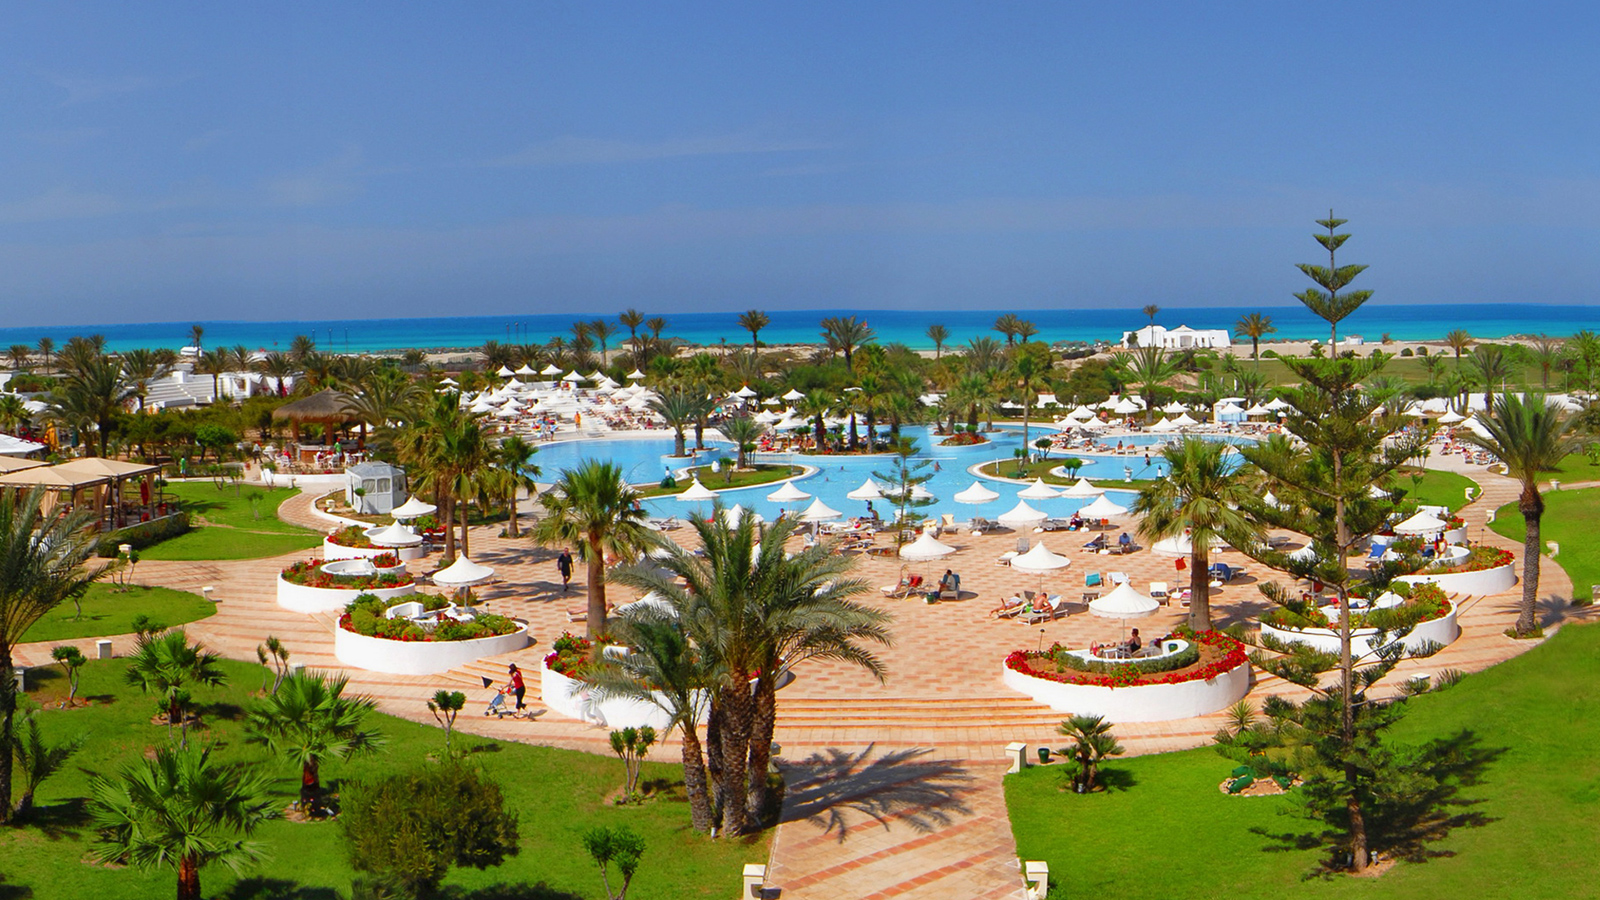 ‪شاطئ حمامات تونس حافل بالأنشطة المائية الرائعة والمتنوعة والمنتجعات القريبة من شاطئ المتوسط‬ (مواقع التواصل)